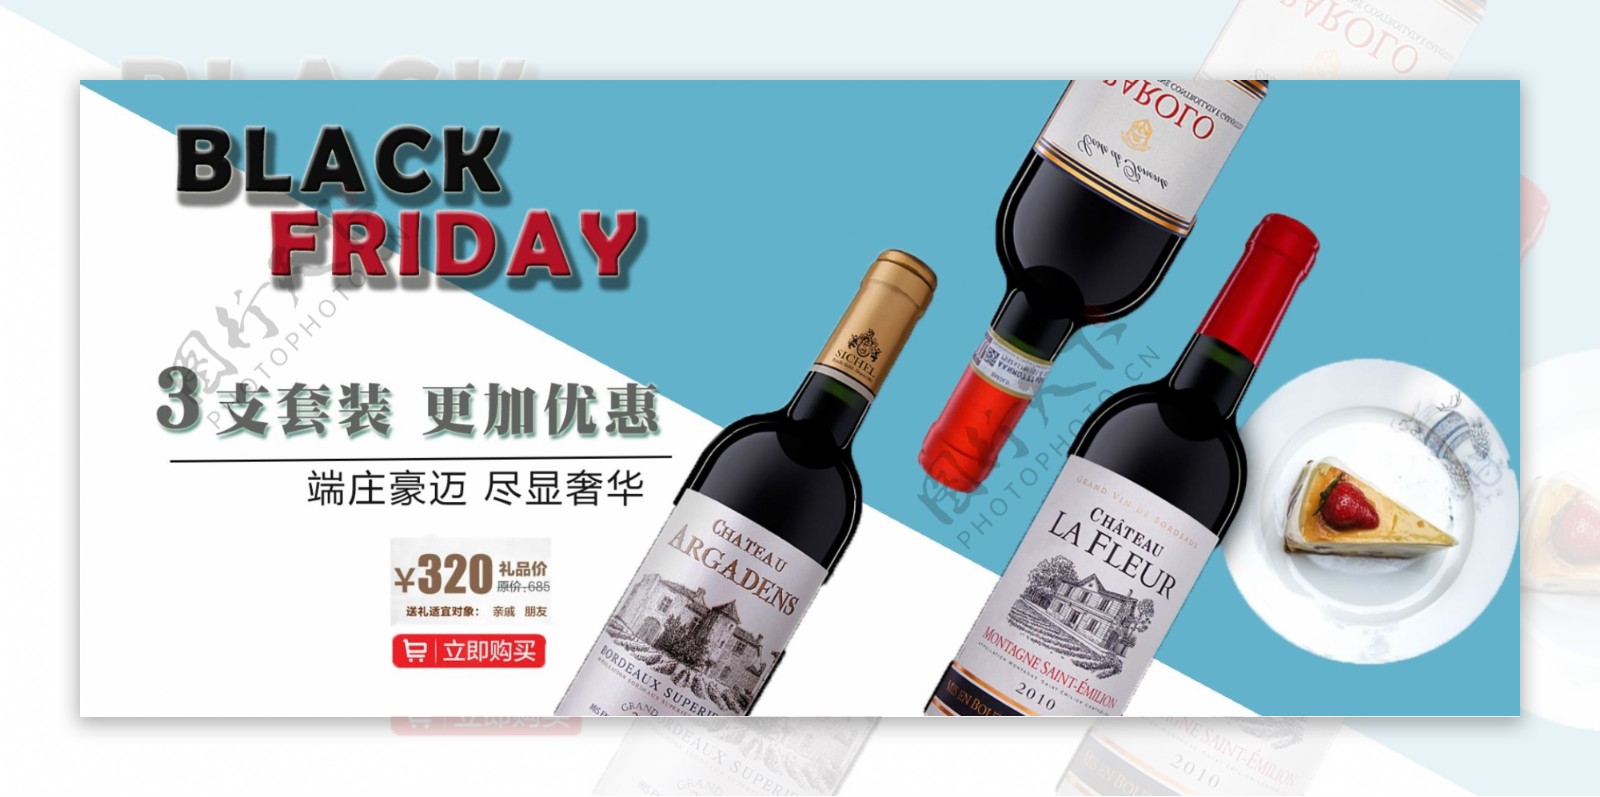 蓝白简约黑色星期五红酒促销淘宝电商海报